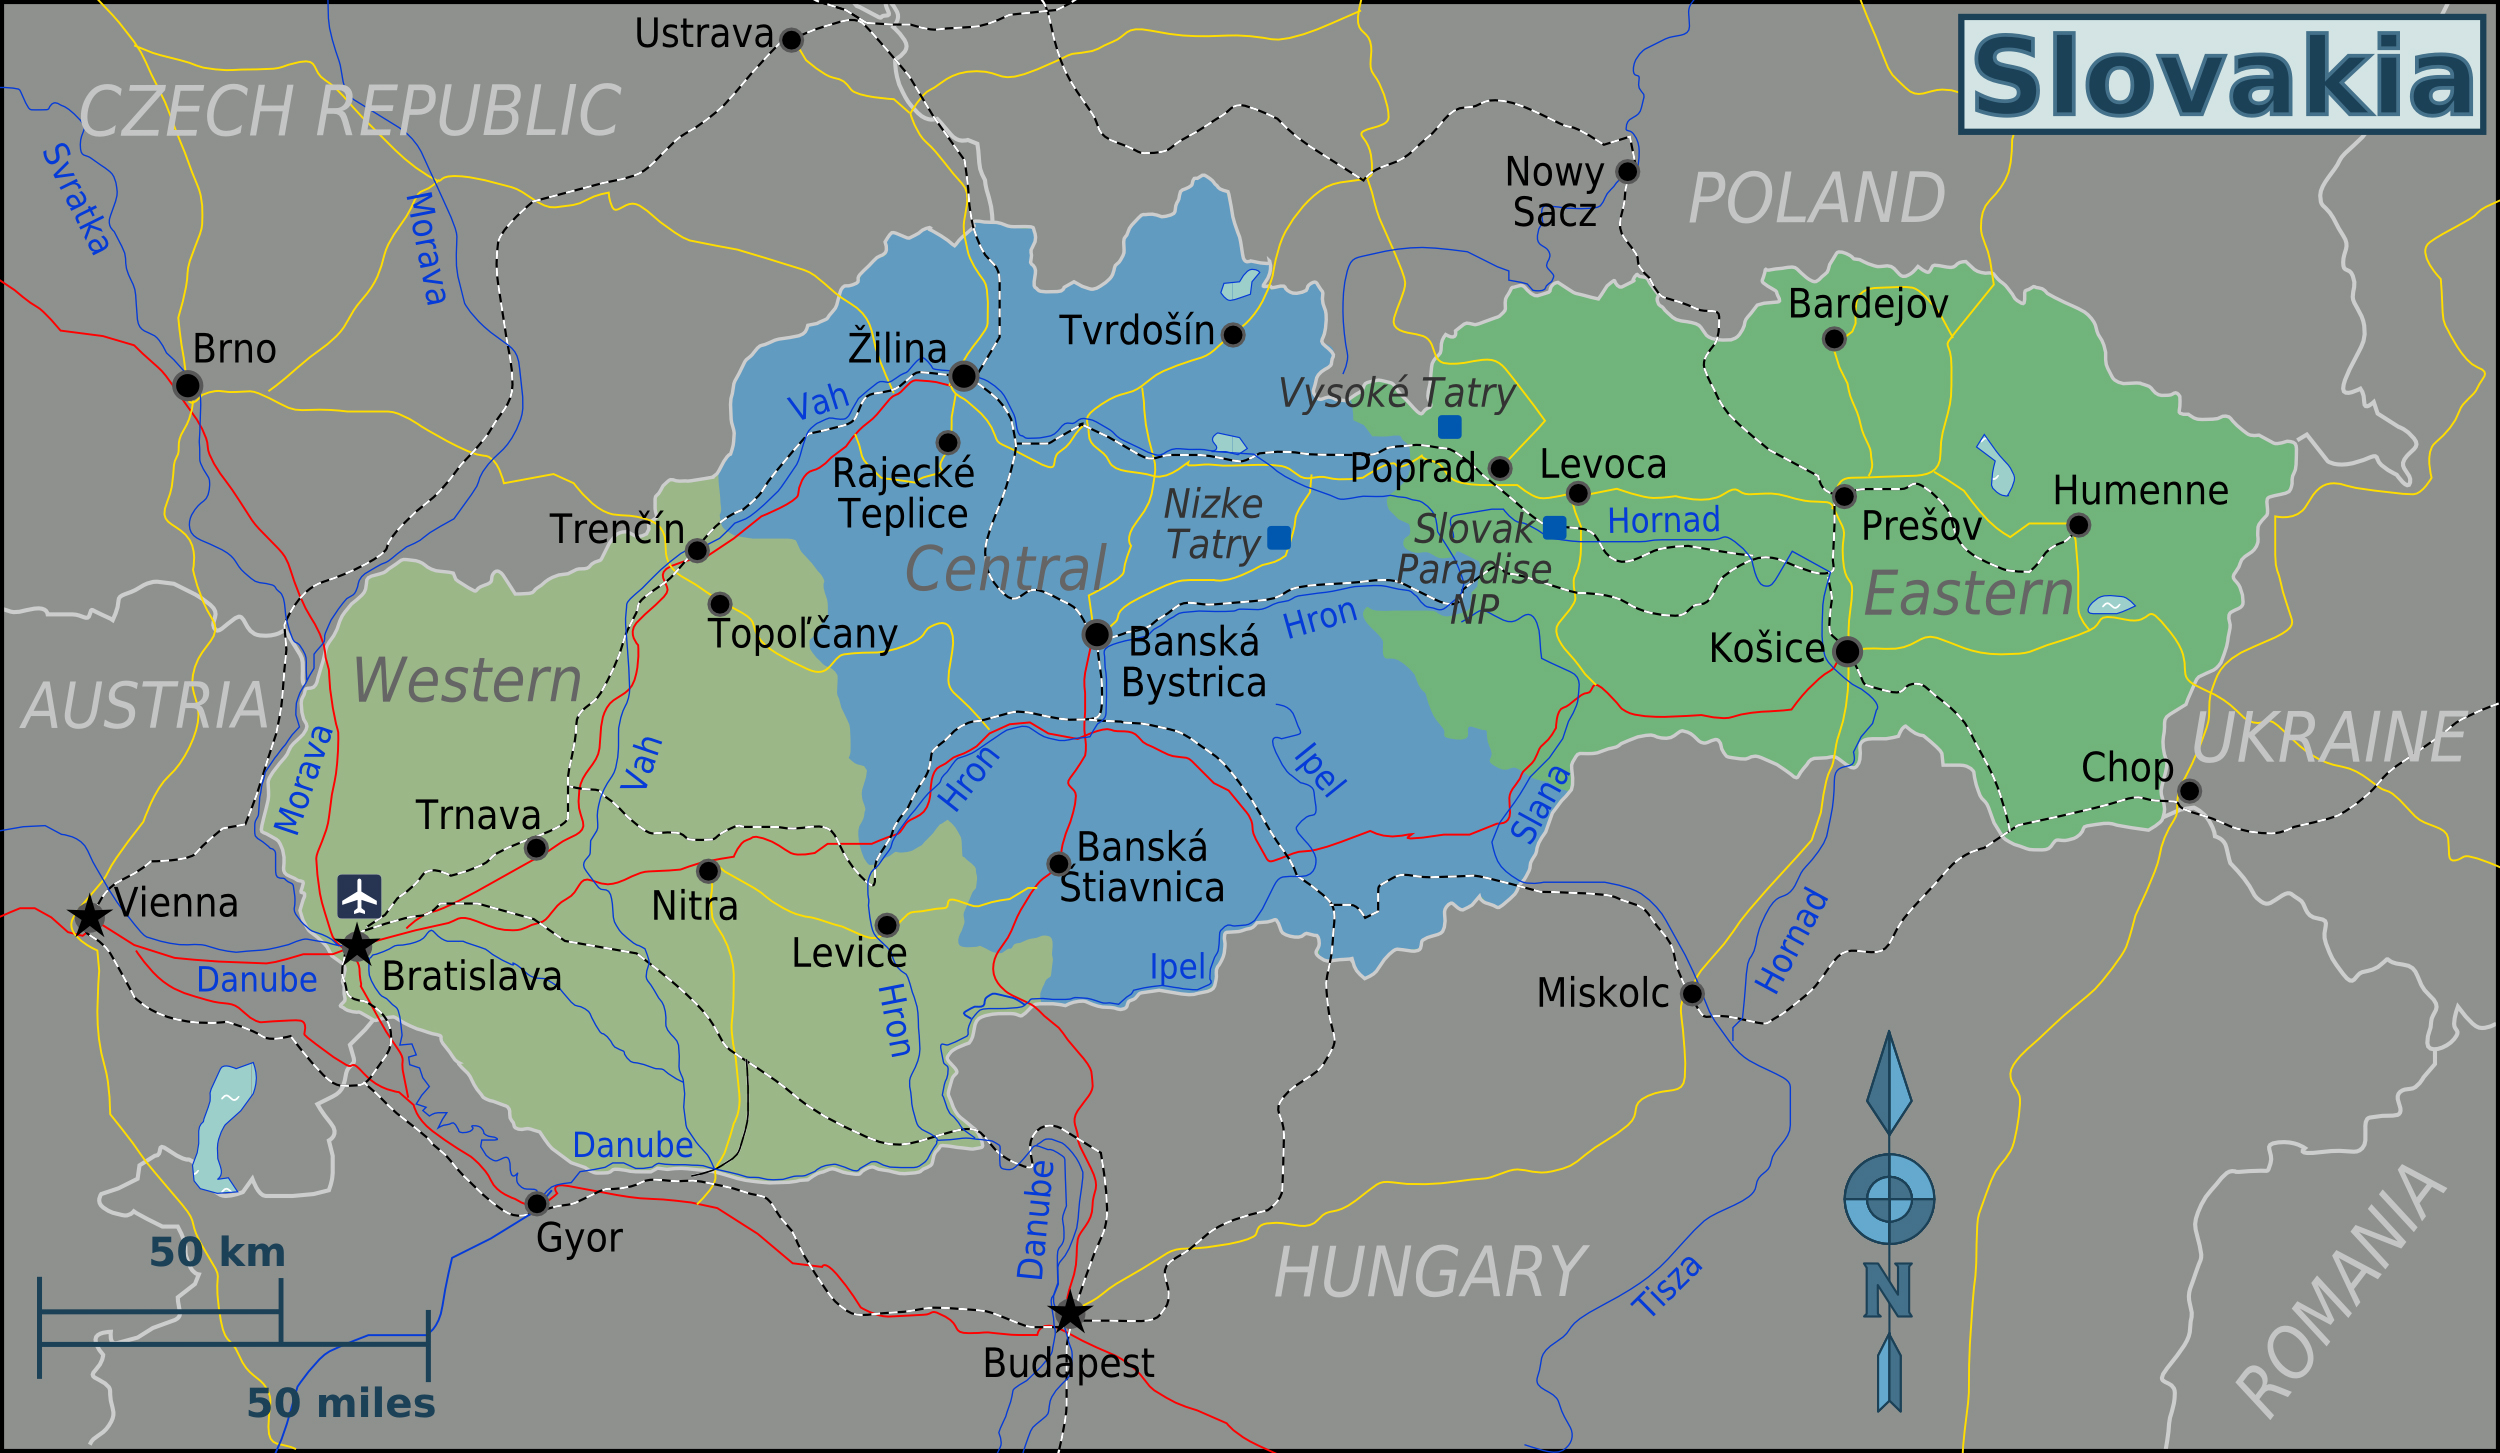 Large regions map of Slovakia | Slovakia | Europe | Mapsland | Maps of